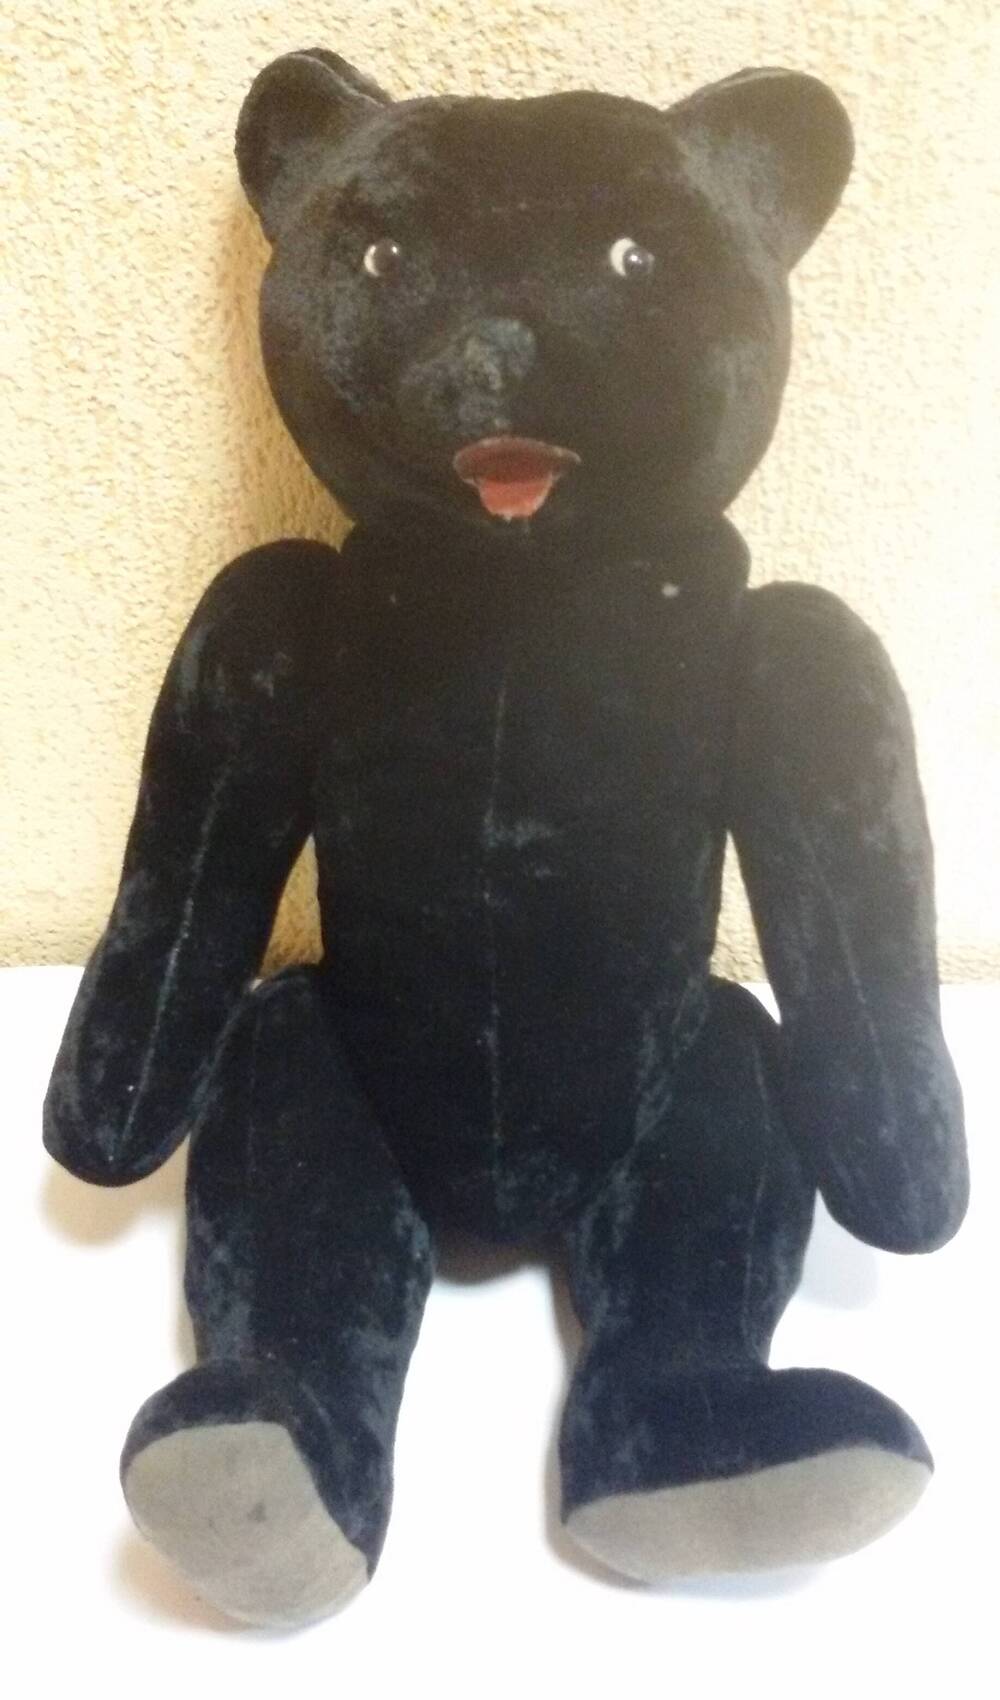 Игрушка Медведь плюшевый черного цвета, 1961 год. Лапы подвижные, 2 черных пластиковых глаза на тканевой основе белого цвета. Рот и язык из двух деталей красного цвета клеенчатые на тканевой основе.